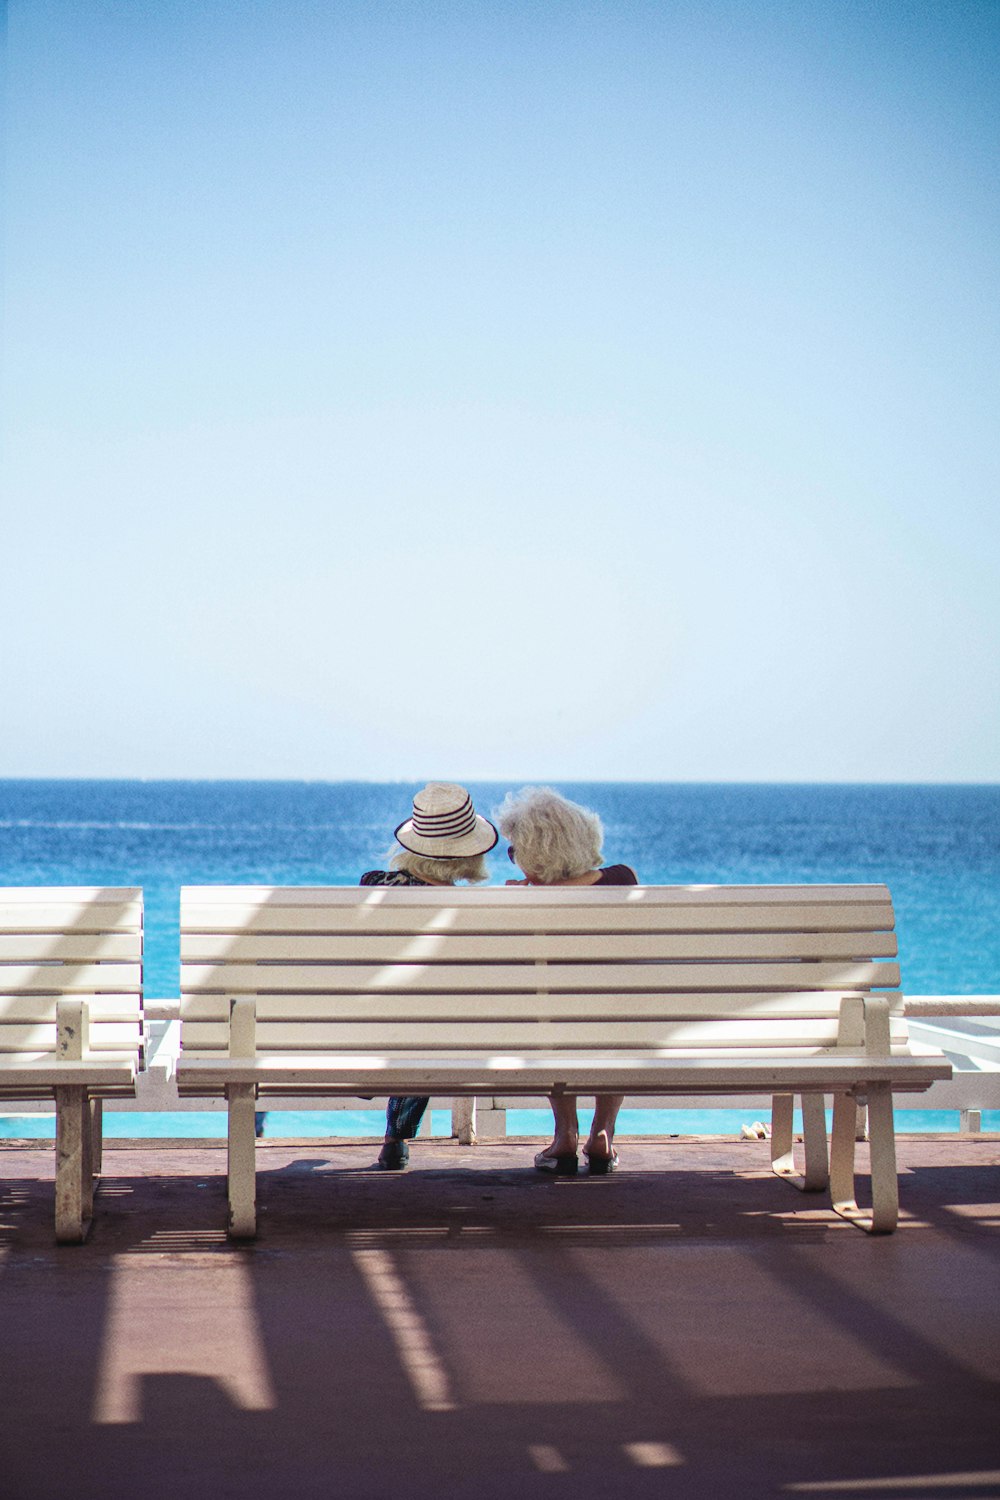 Dos personas sentadas en un banco mirando hacia el océano